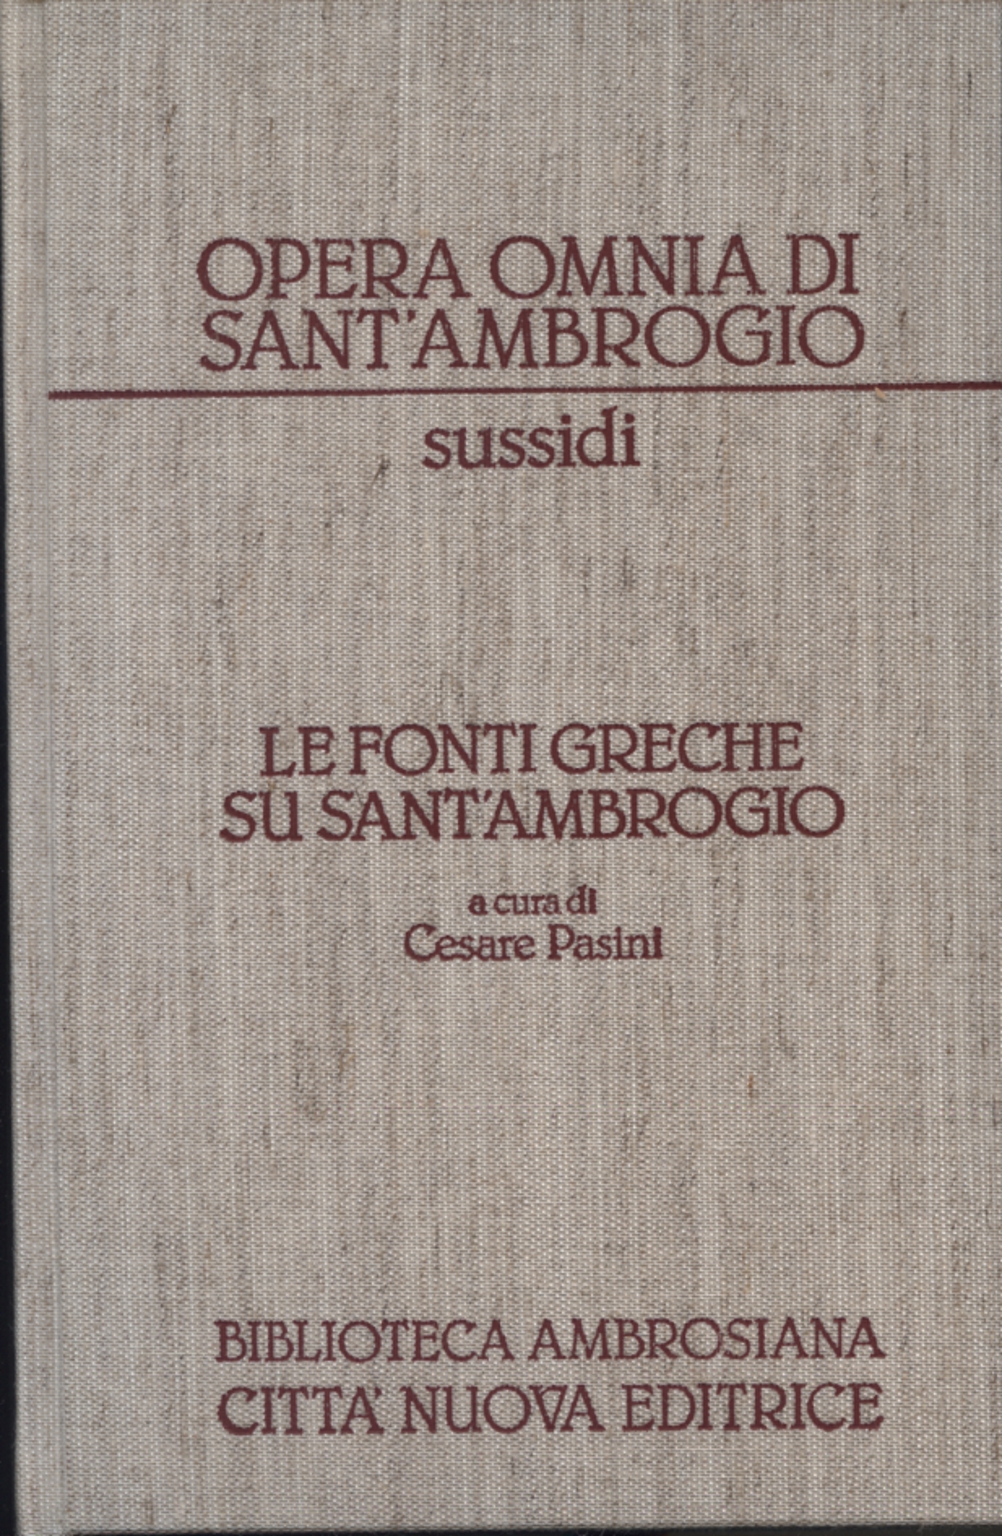 Le fonti greche su Sant'Ambrogio, Cesare Pasini